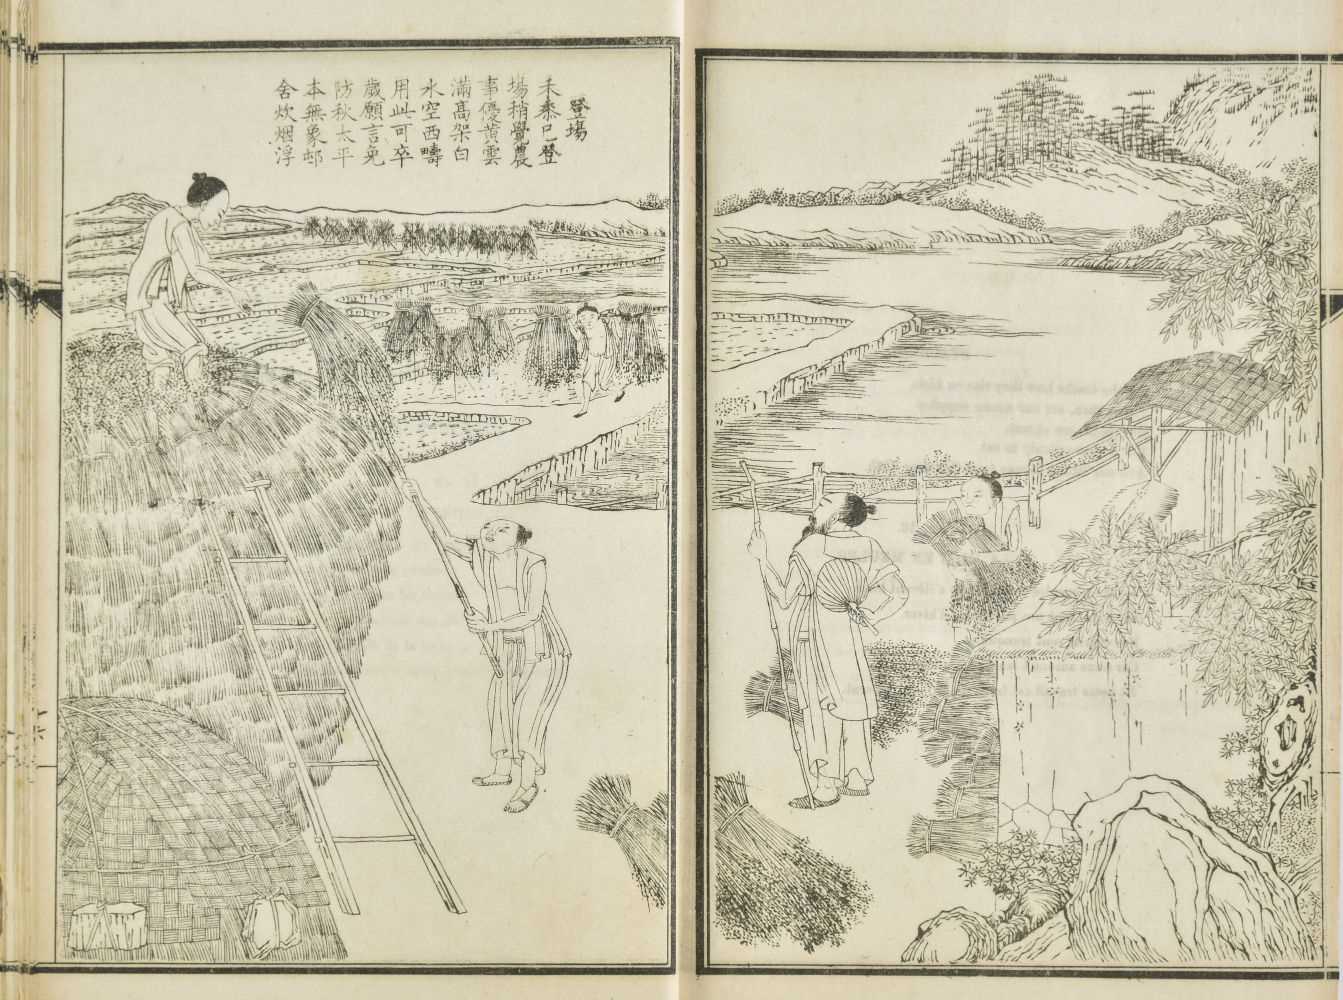 Lot 142 - China. La culture du riz illustrée, Shanghai: Tien-shi-chai Photo-lithographic works, [1879]